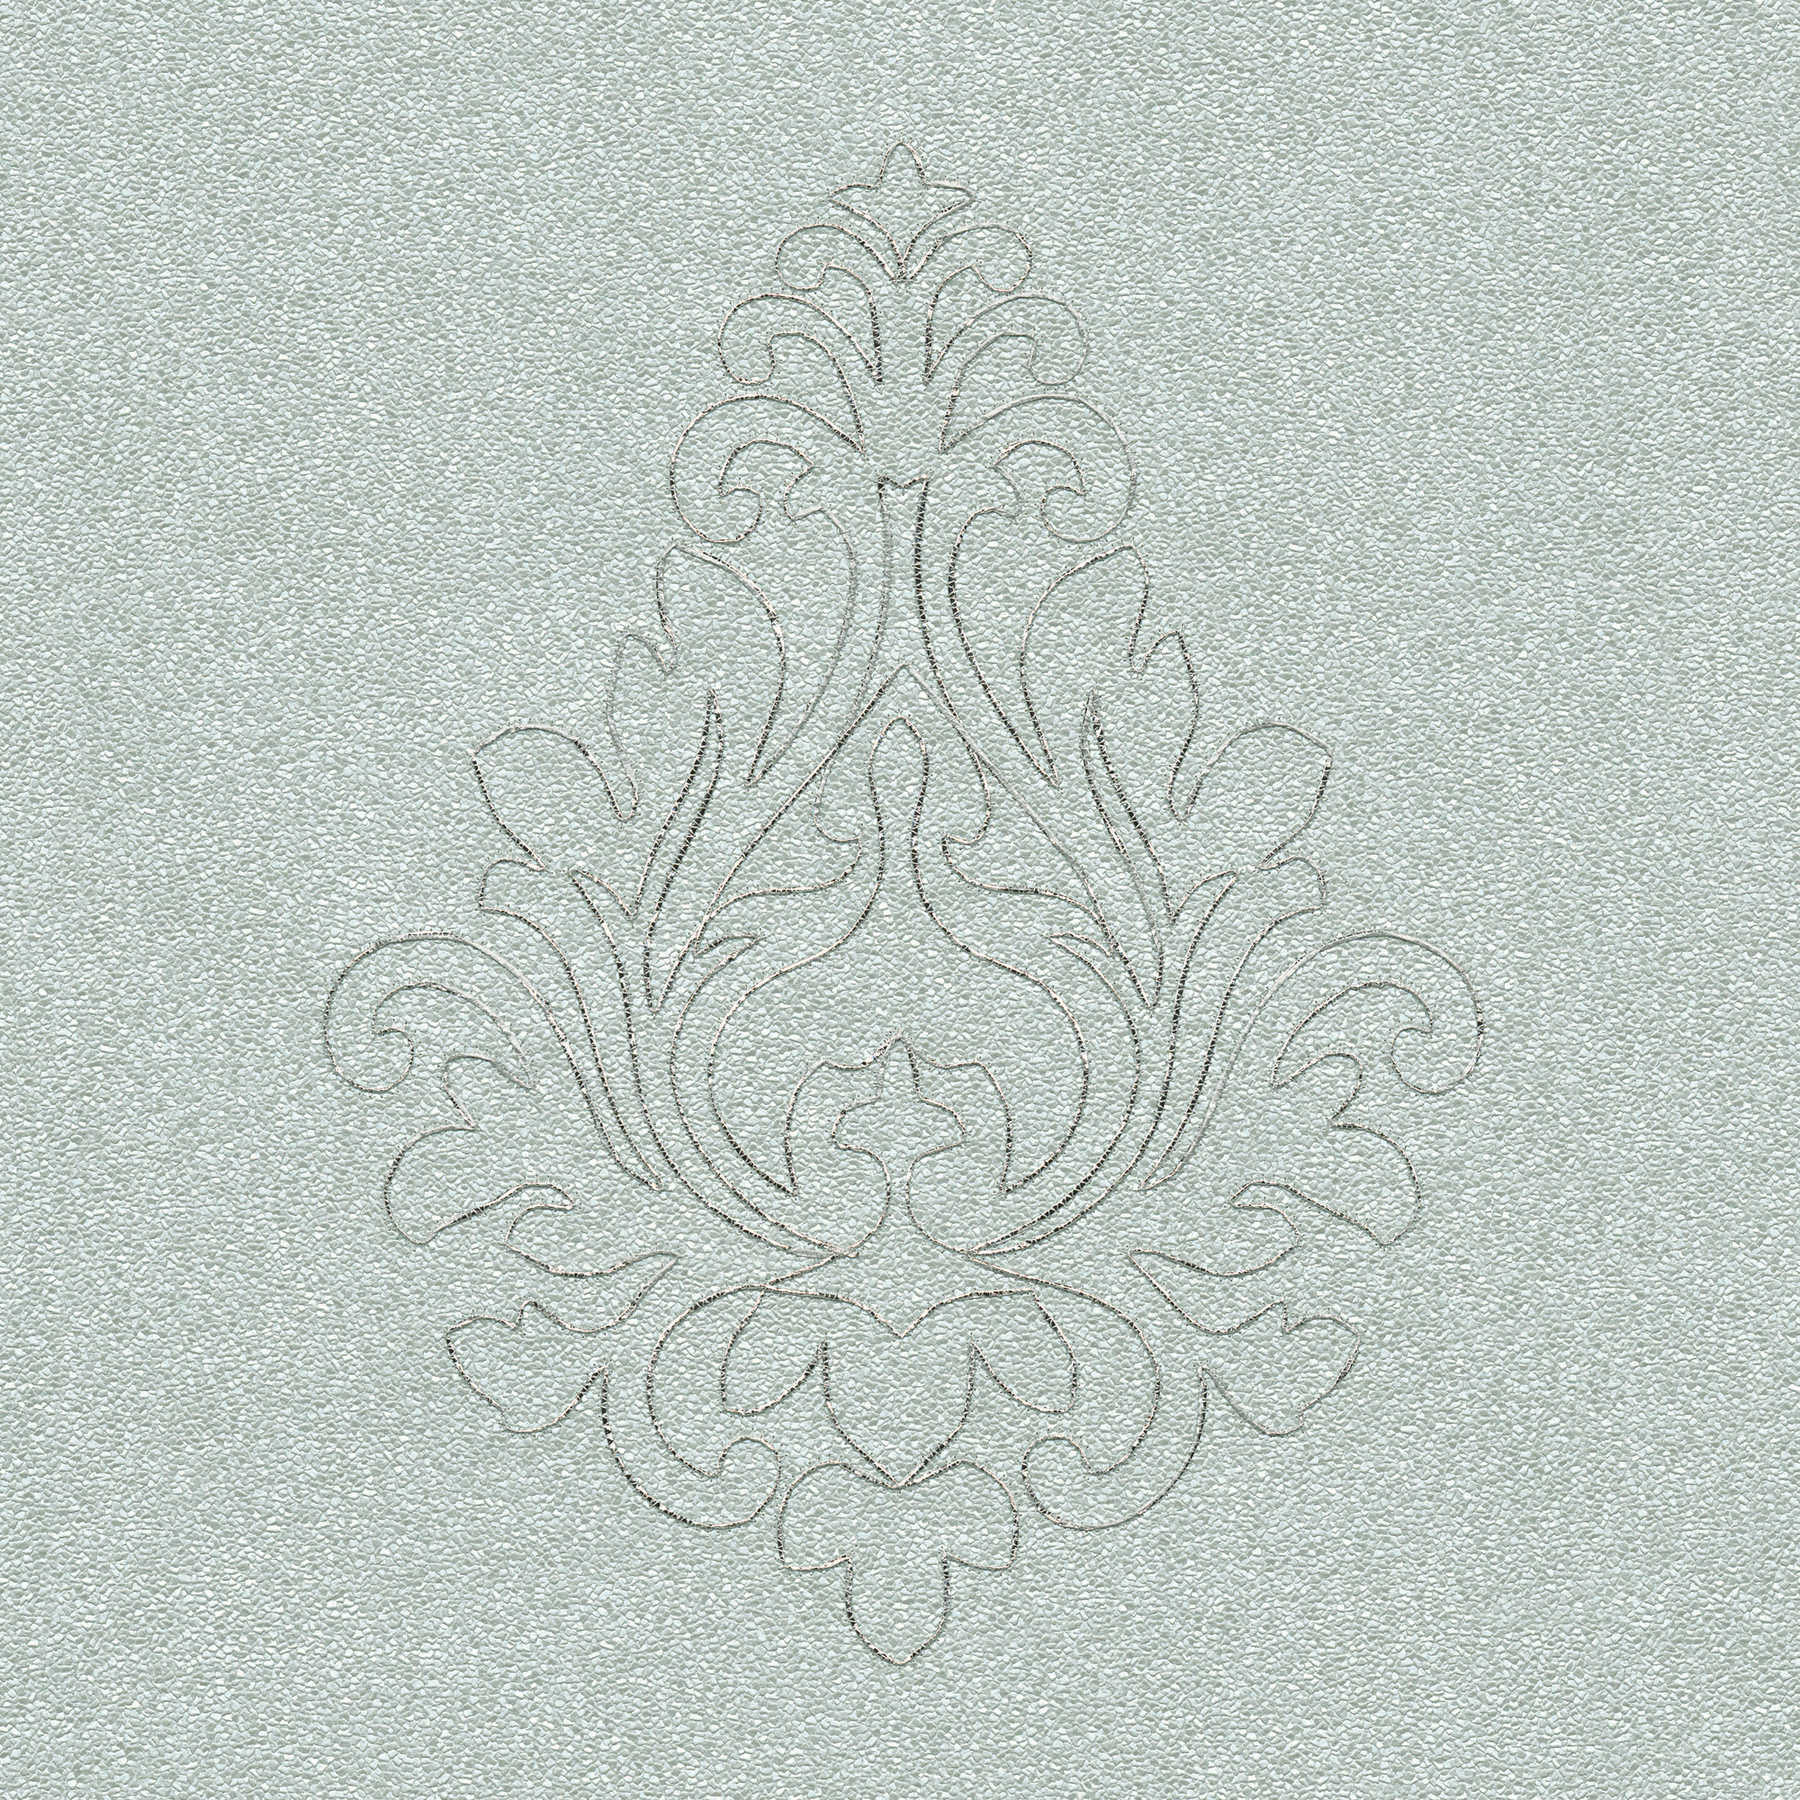             Pannello da parete premium con ornamenti e struttura robusta - grigio, argento
        